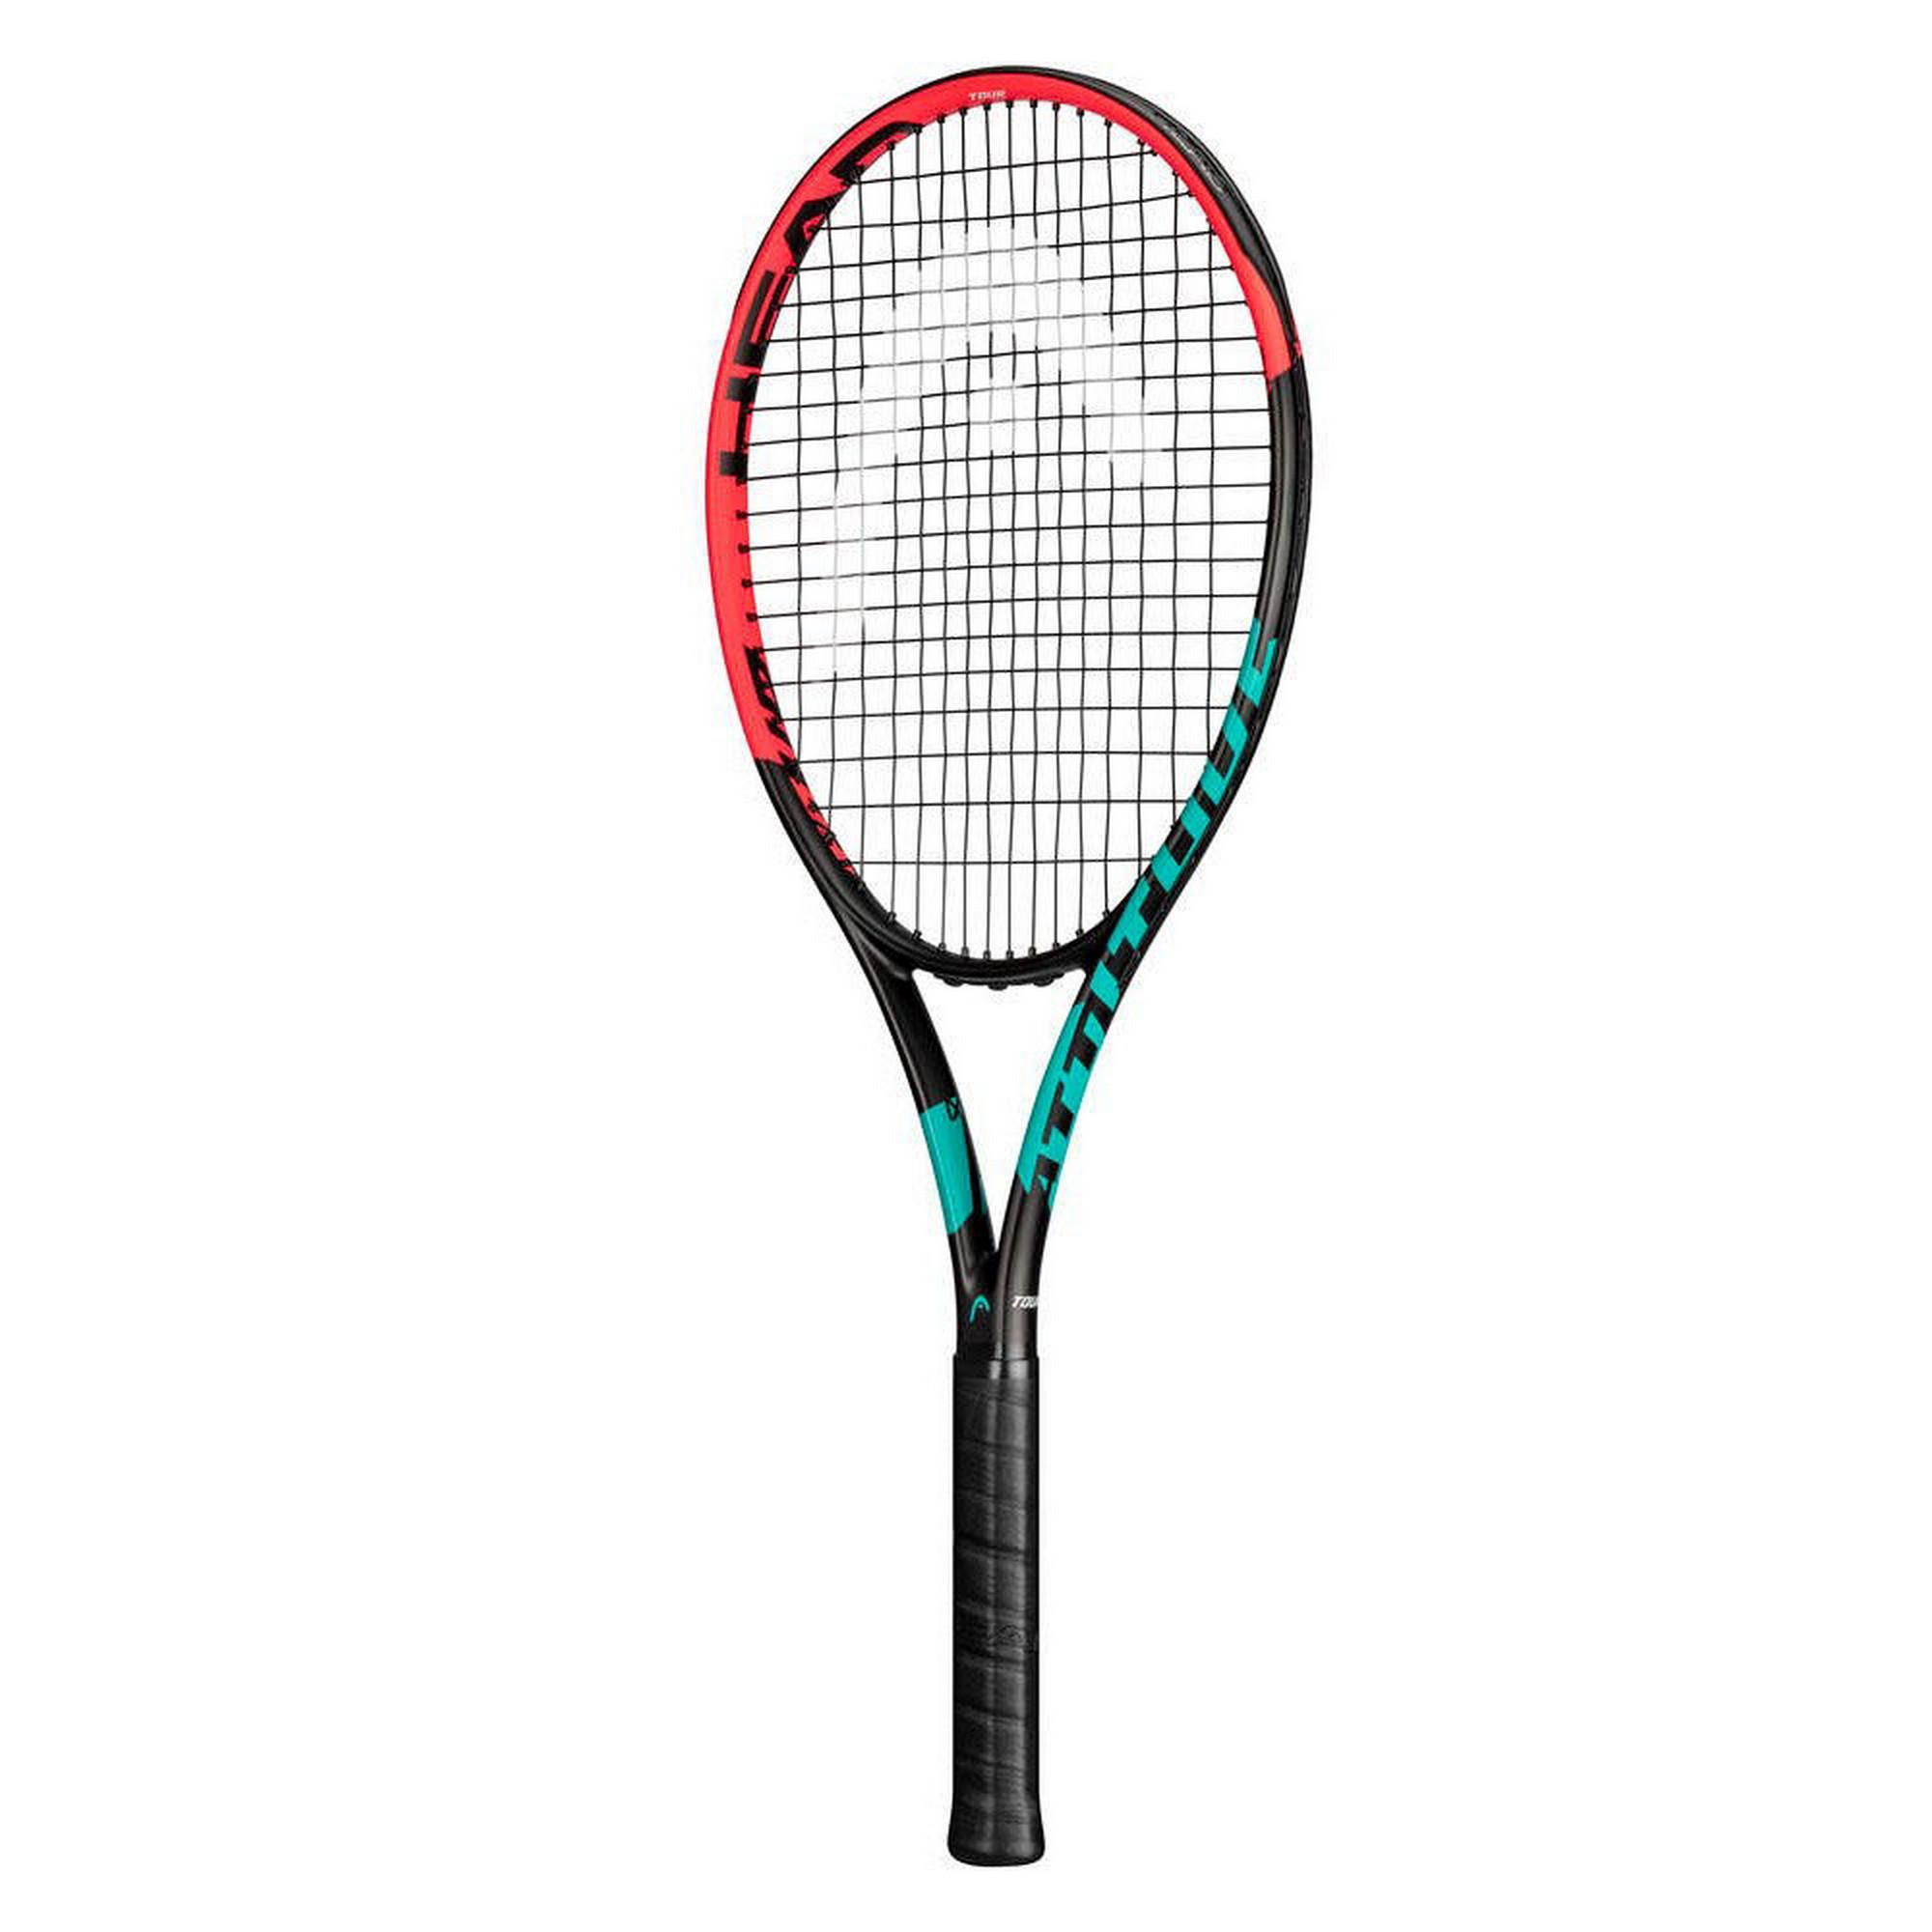 Купить Ракетка для большого тенниса Head MX Attitude Tour Gr2 234301 черно-оранжевый,